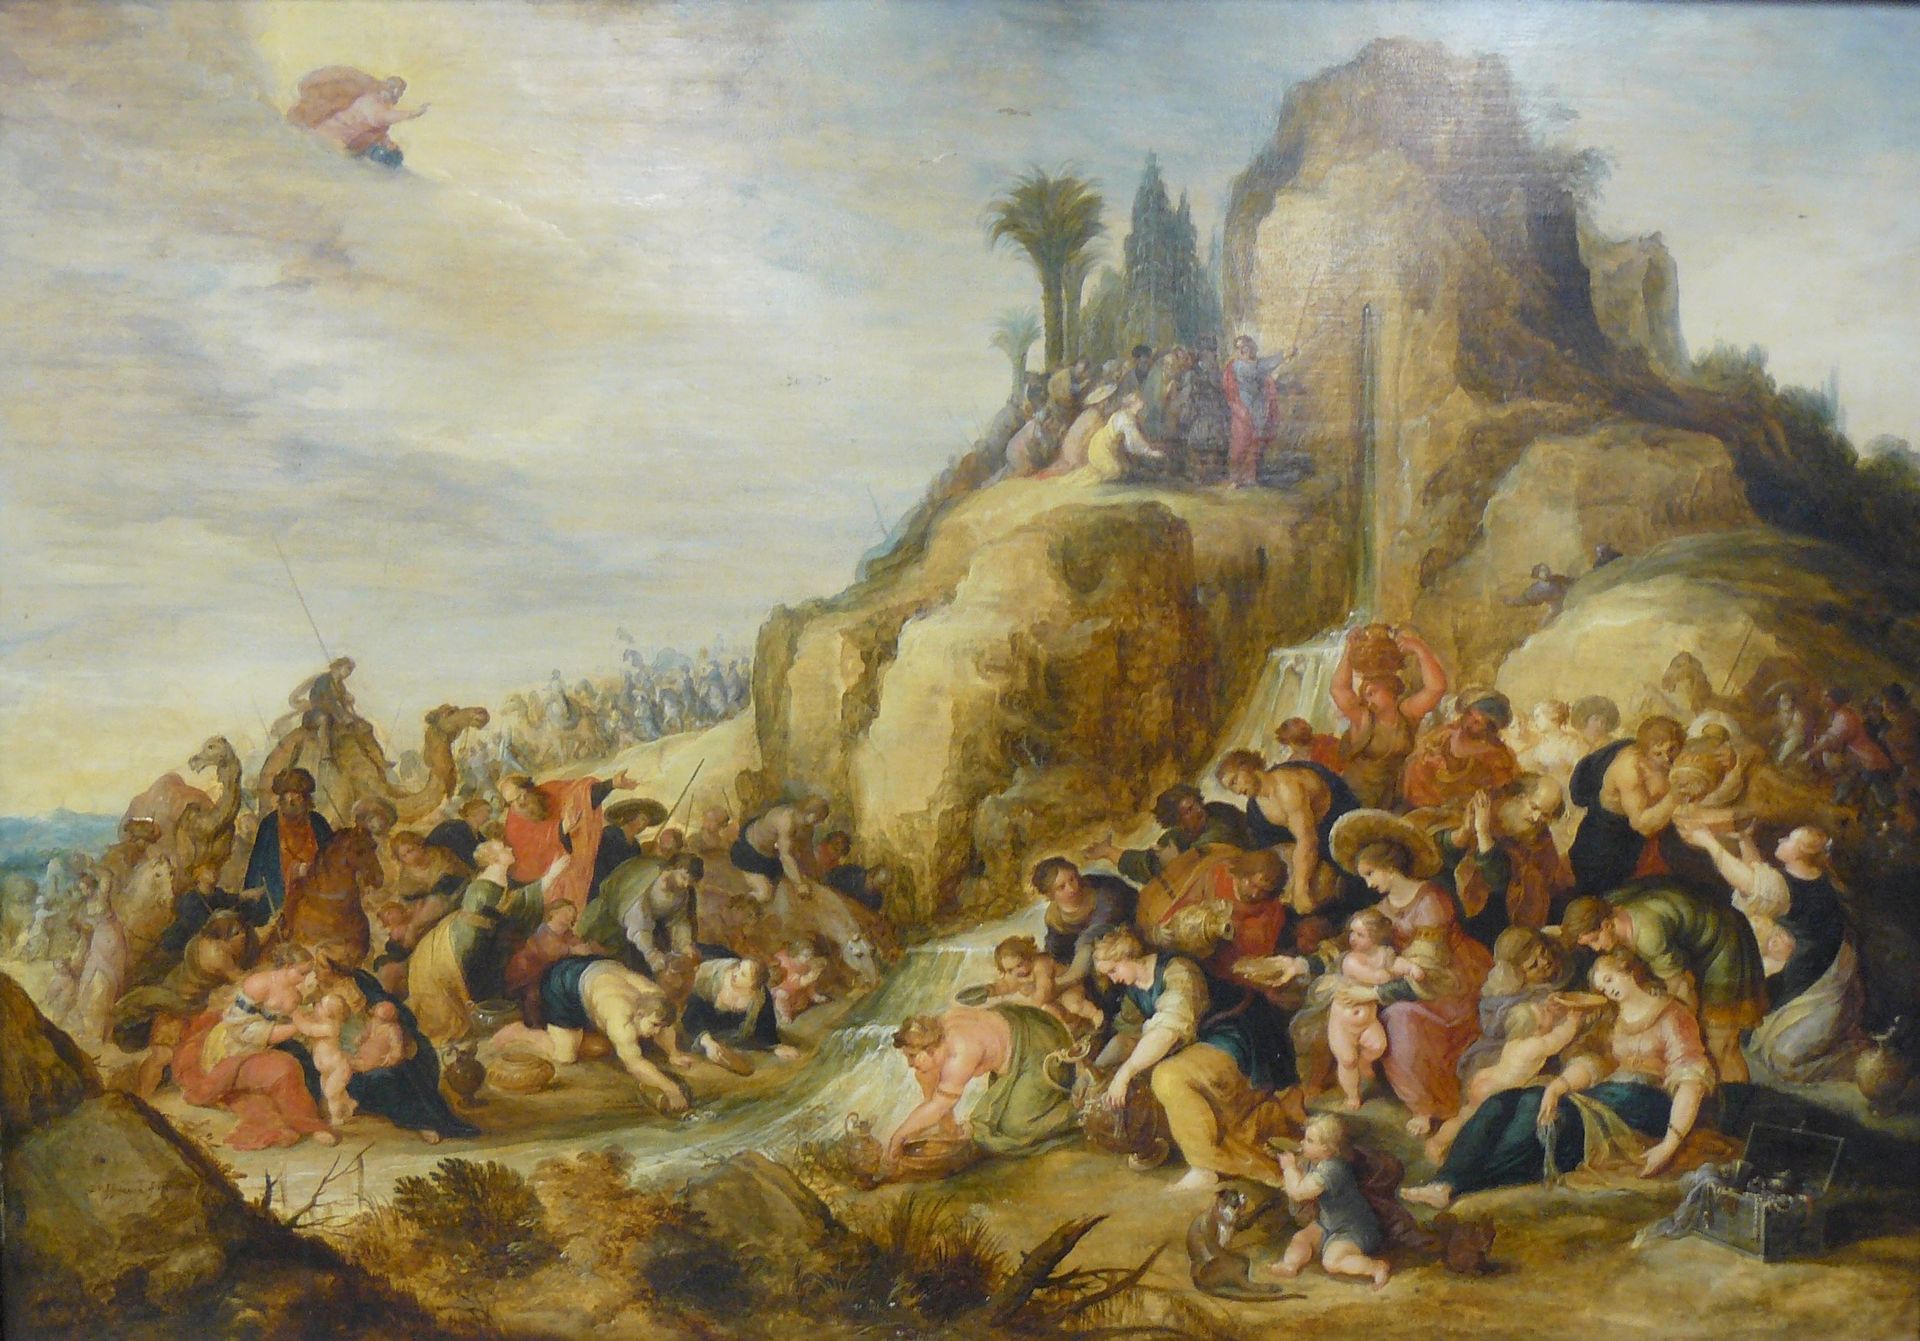 Frans FRANCKEN le jeune 
小弗兰肯(Frans FRANCKEN)(1581-1642)和他的工作室


摩西敲击岩石，薄板上的油彩，有&hellip;